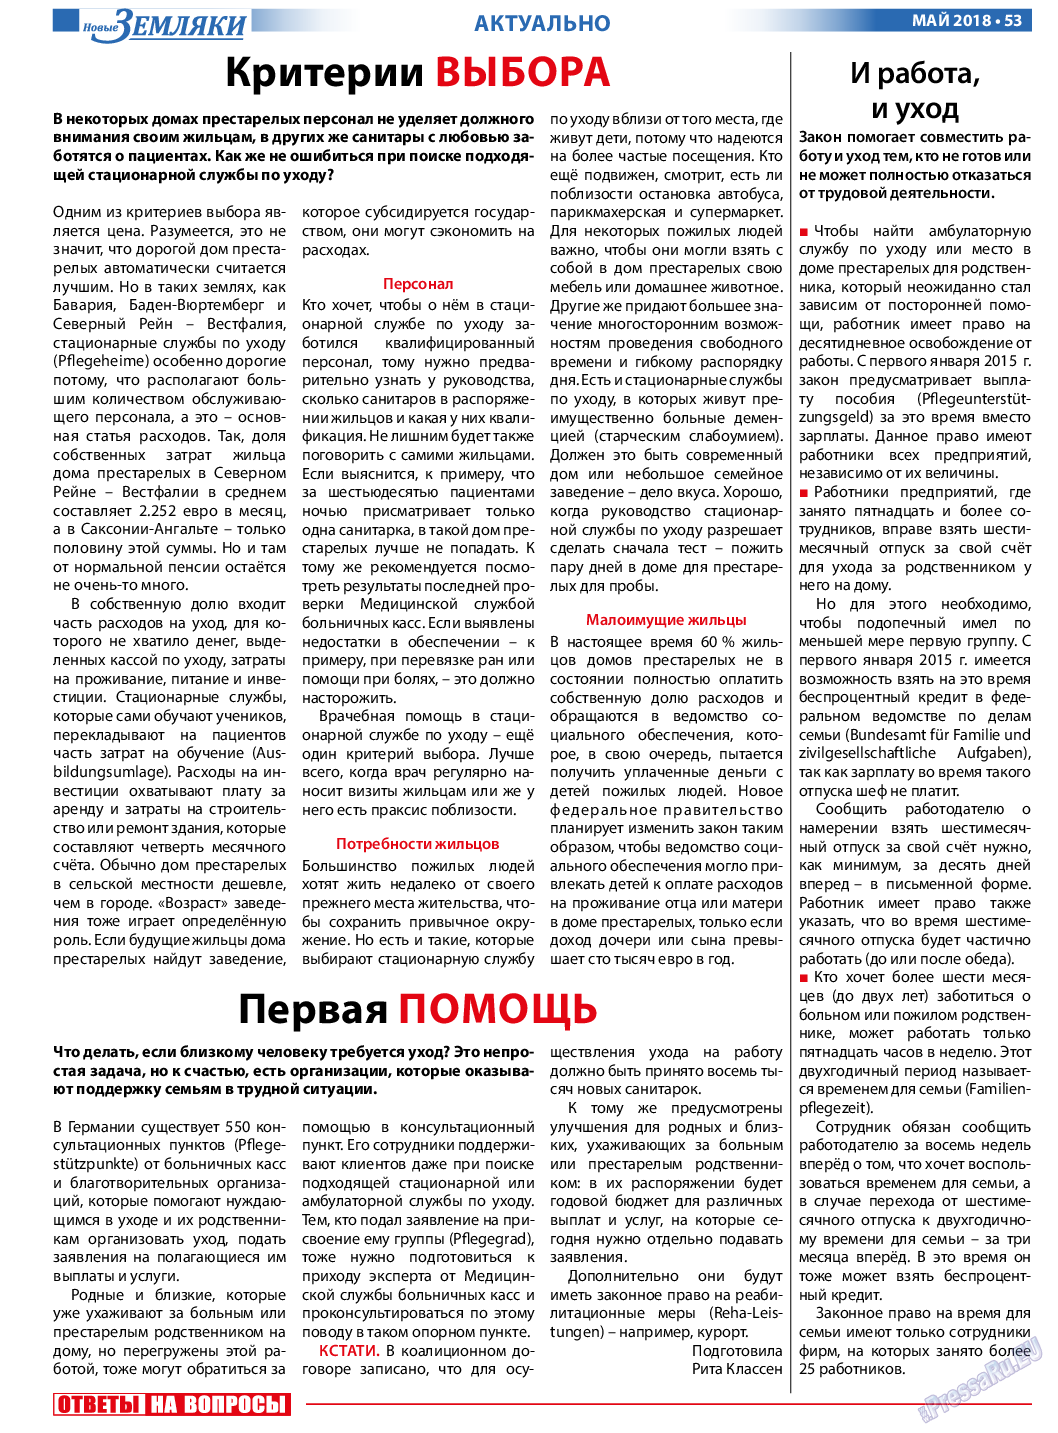 Новые Земляки, газета. 2018 №5 стр.53